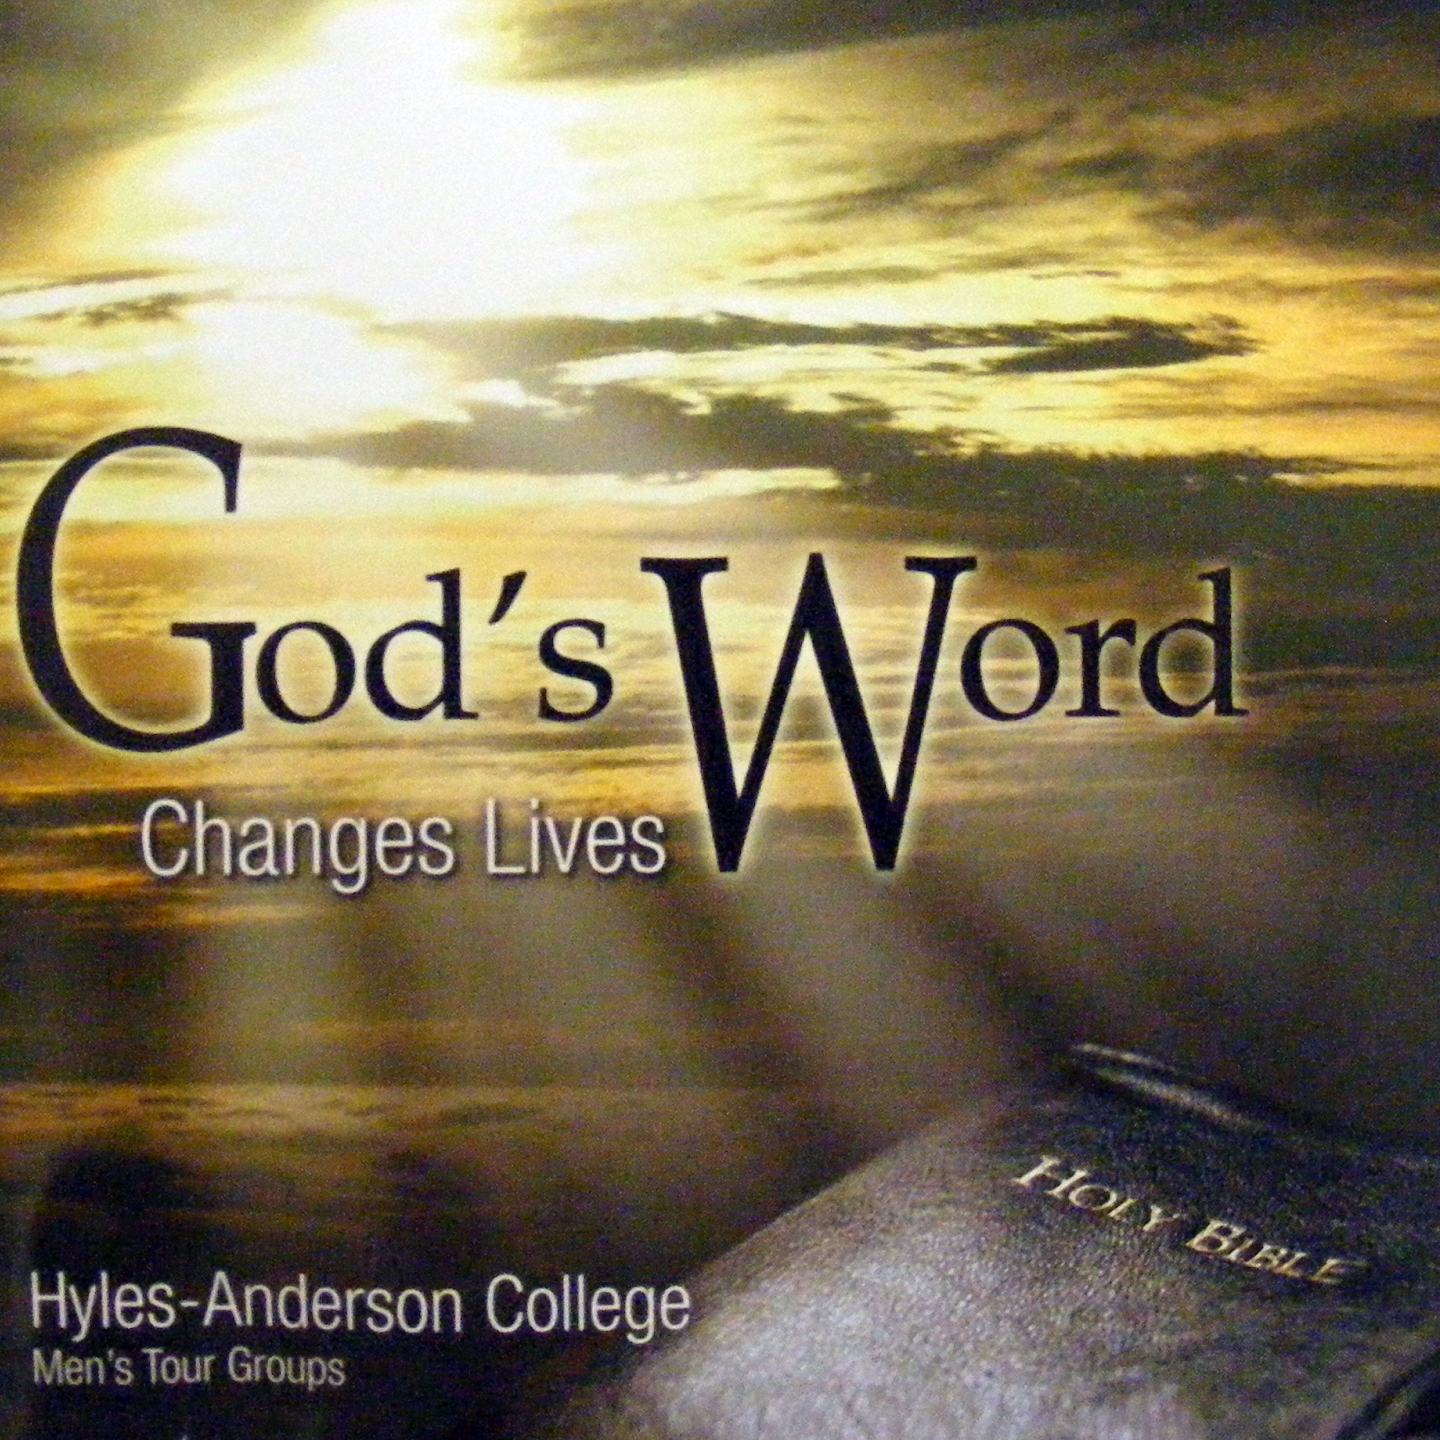 God's Word Changes Lives